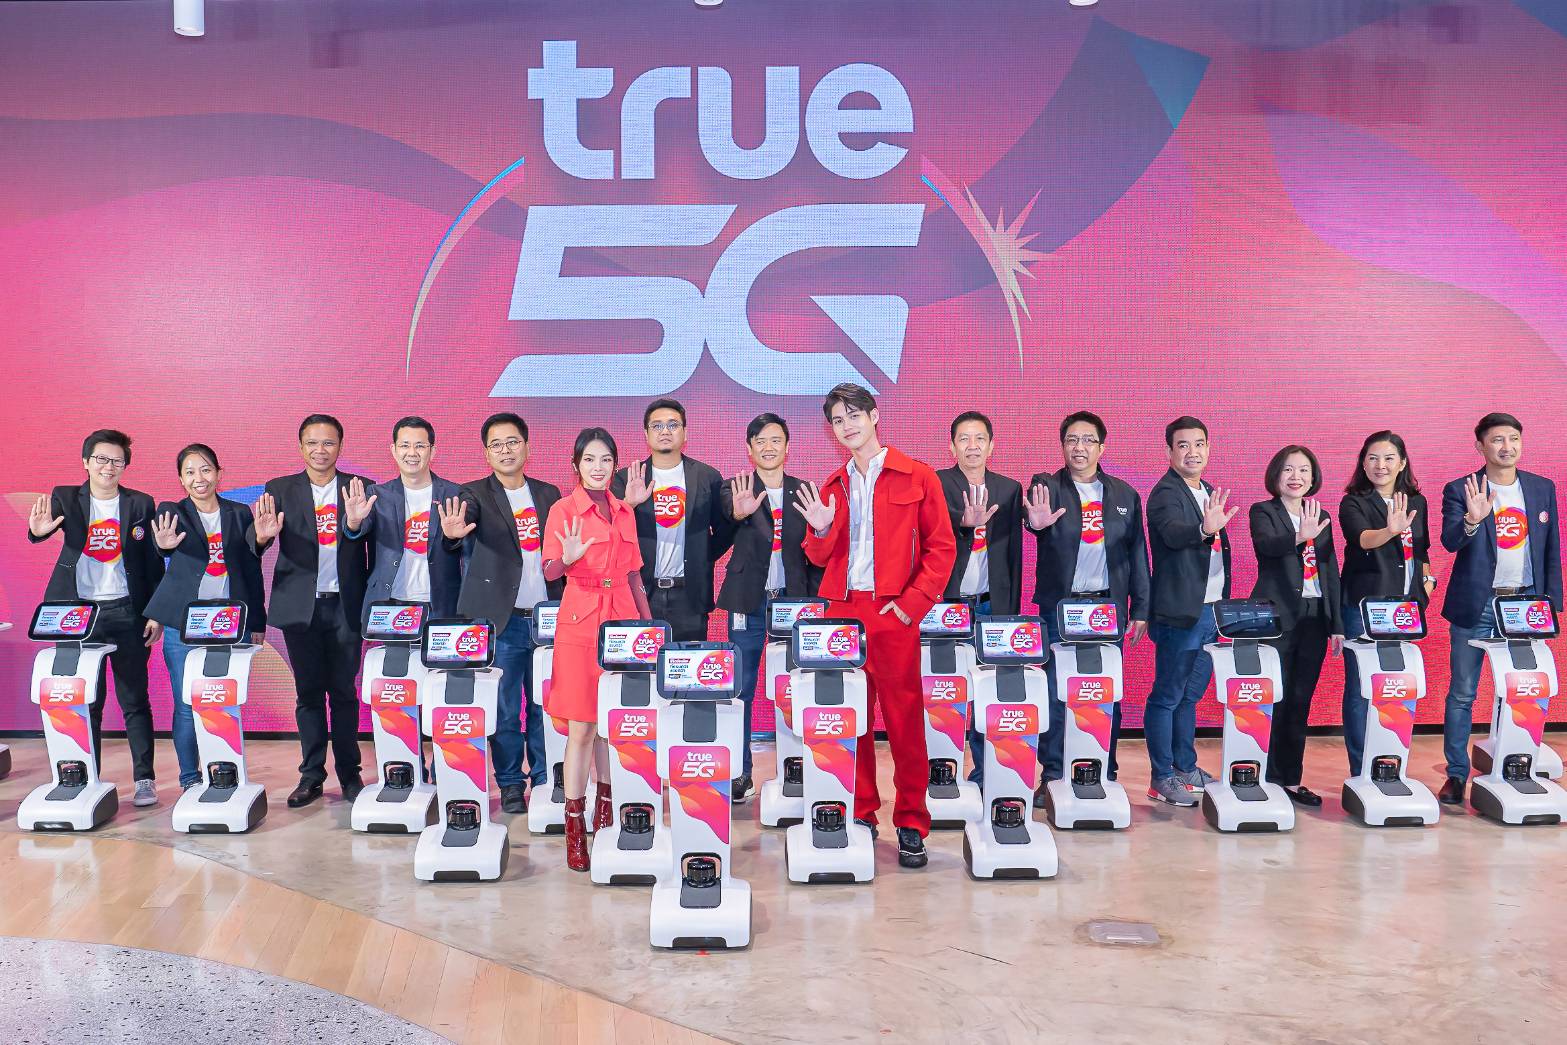 ทรู 5G พลิกโฉมไทยสู่ประเทศอัจฉริยะที่ยั่งยืน ผสานพลังพันธมิตรเพื่อนคู่ค้า ผ่าน True VROOM สร้างความเชื่อมั่น เพิ่มโอกาสทางธุรกิจ